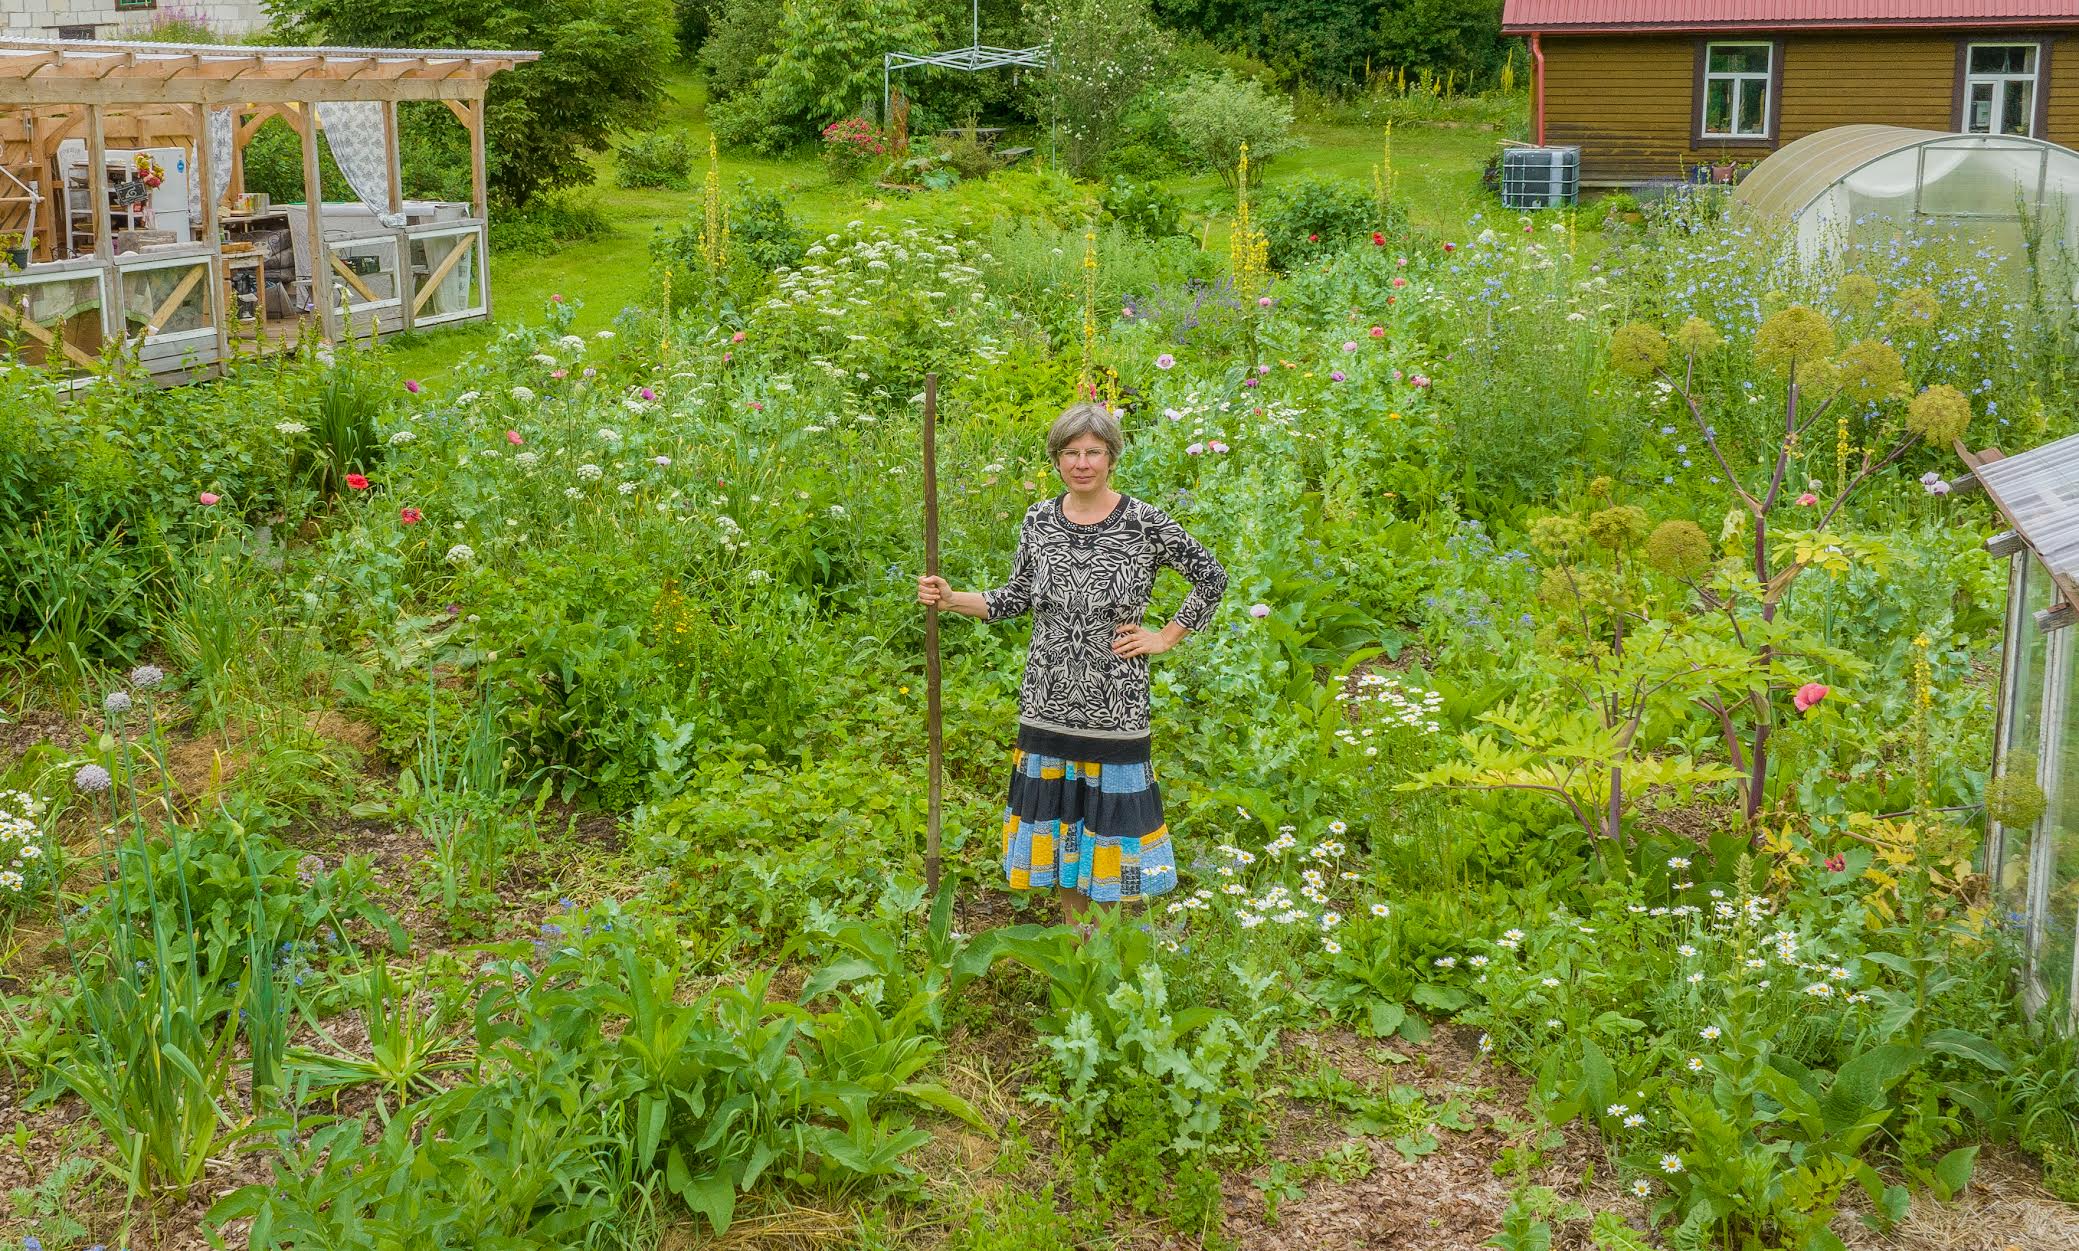 Veidi enne avatud talude päeva oli Triinu Guerrin oma aias veel üksi. Külastuspäevadel jõudis tema permaaeda aga täpselt parasjagu uudistajaid, et sisukaid jutuajamisi pidada. Inimestega kohtumine on avatud talude päeva suurim kasu. Foto: AIGAR NAGEL